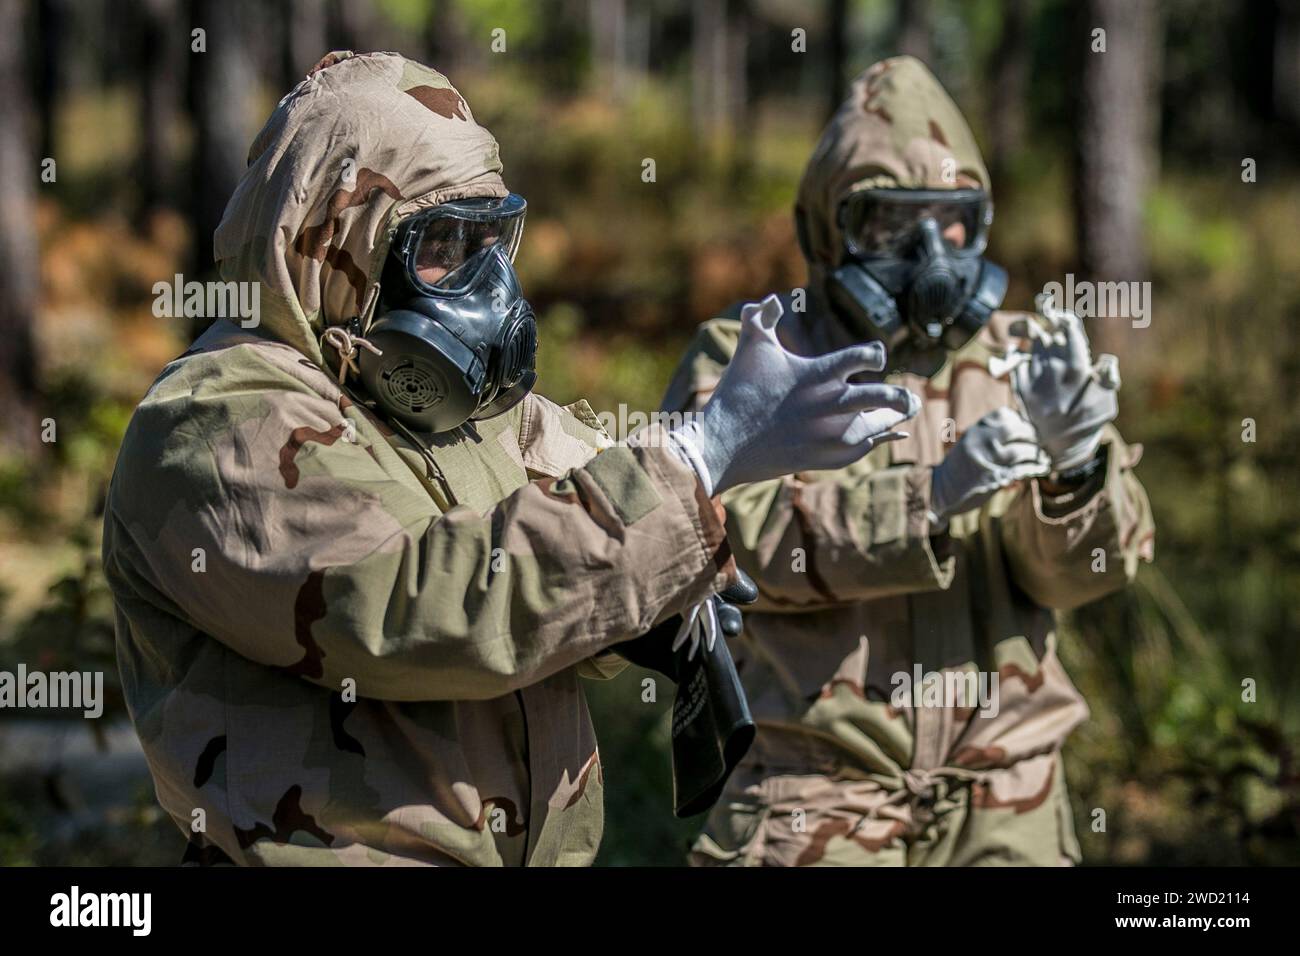 Soldats enfilant et enlevant les vêtements de protection utilisés lors d'attaques chimiques, biologiques, radiologiques et nucléaires. Banque D'Images